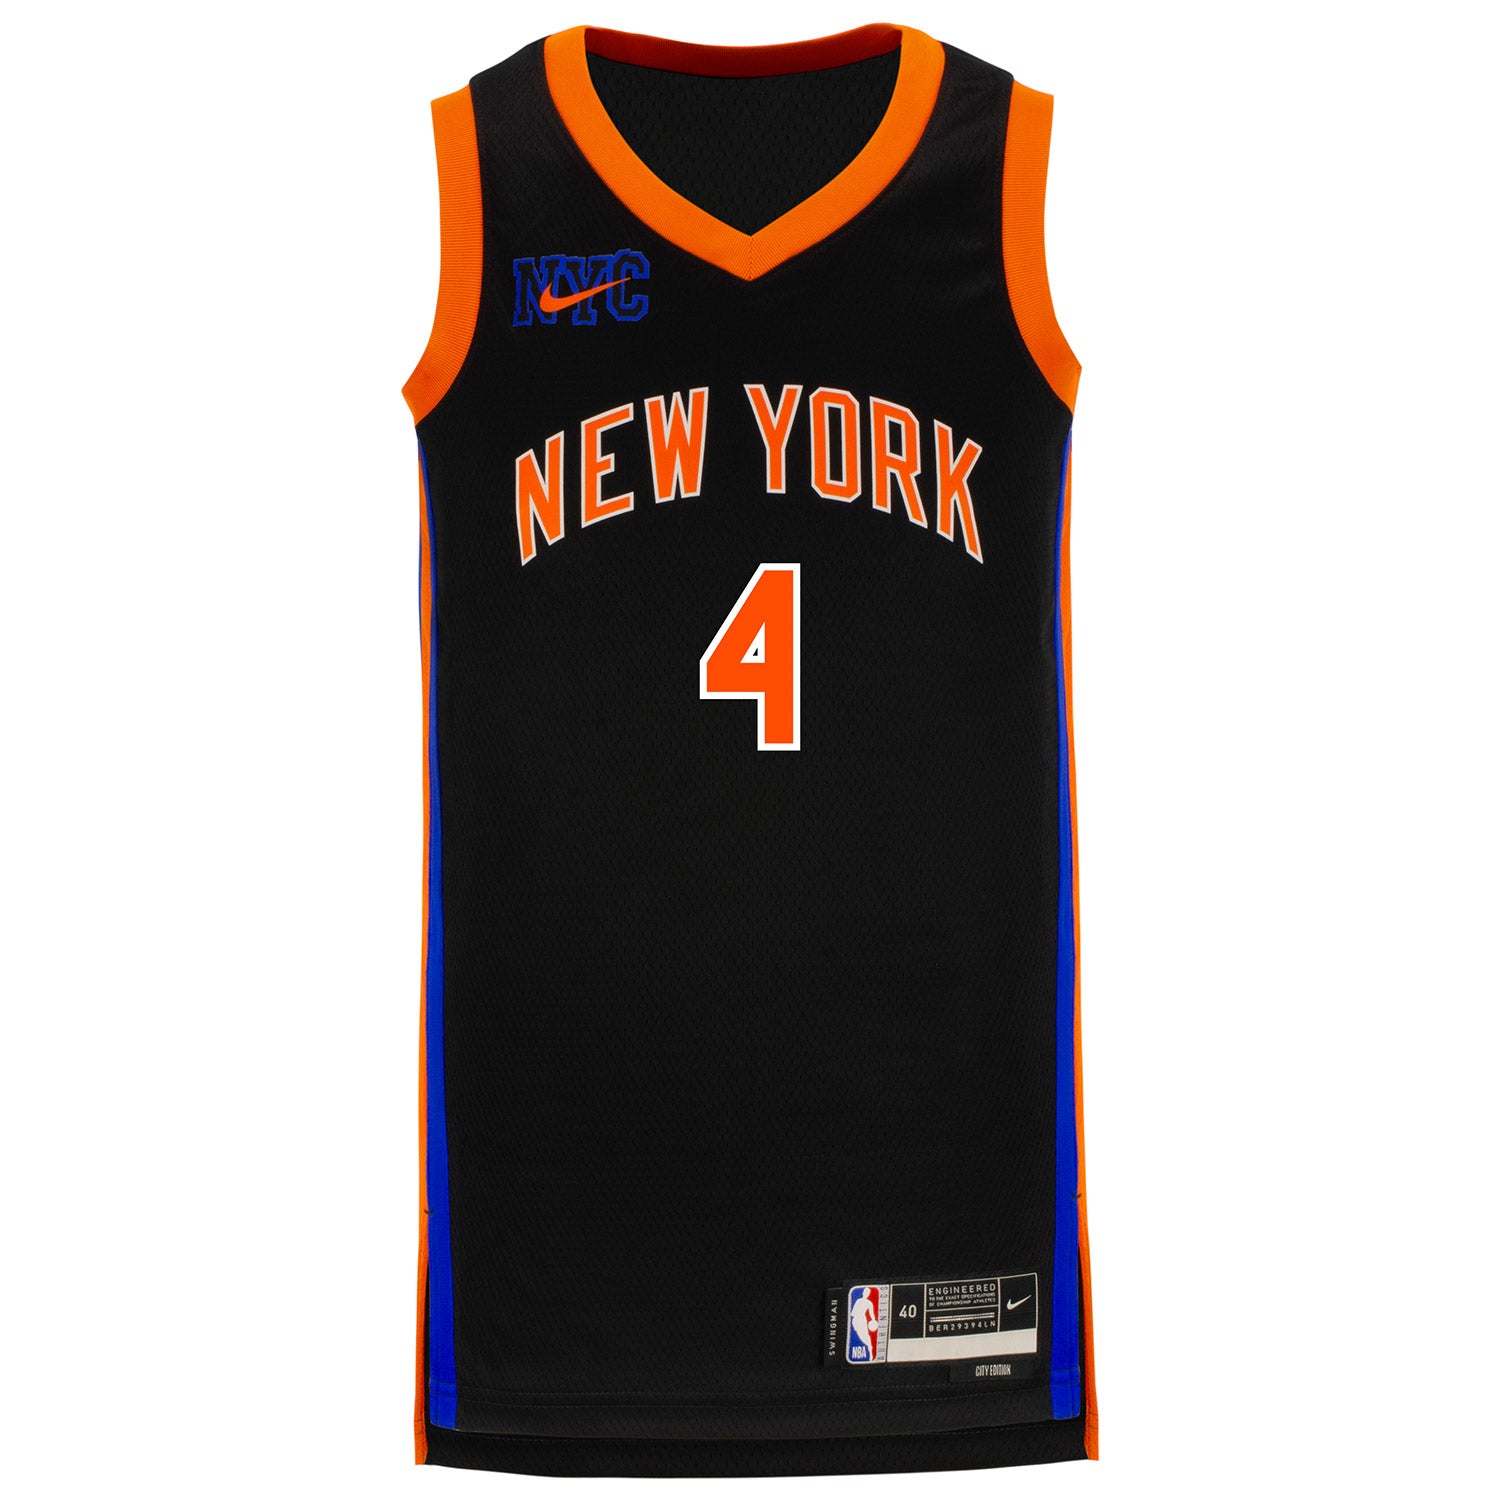 New York Knicks Jerseys in New York Knicks Team Shop 